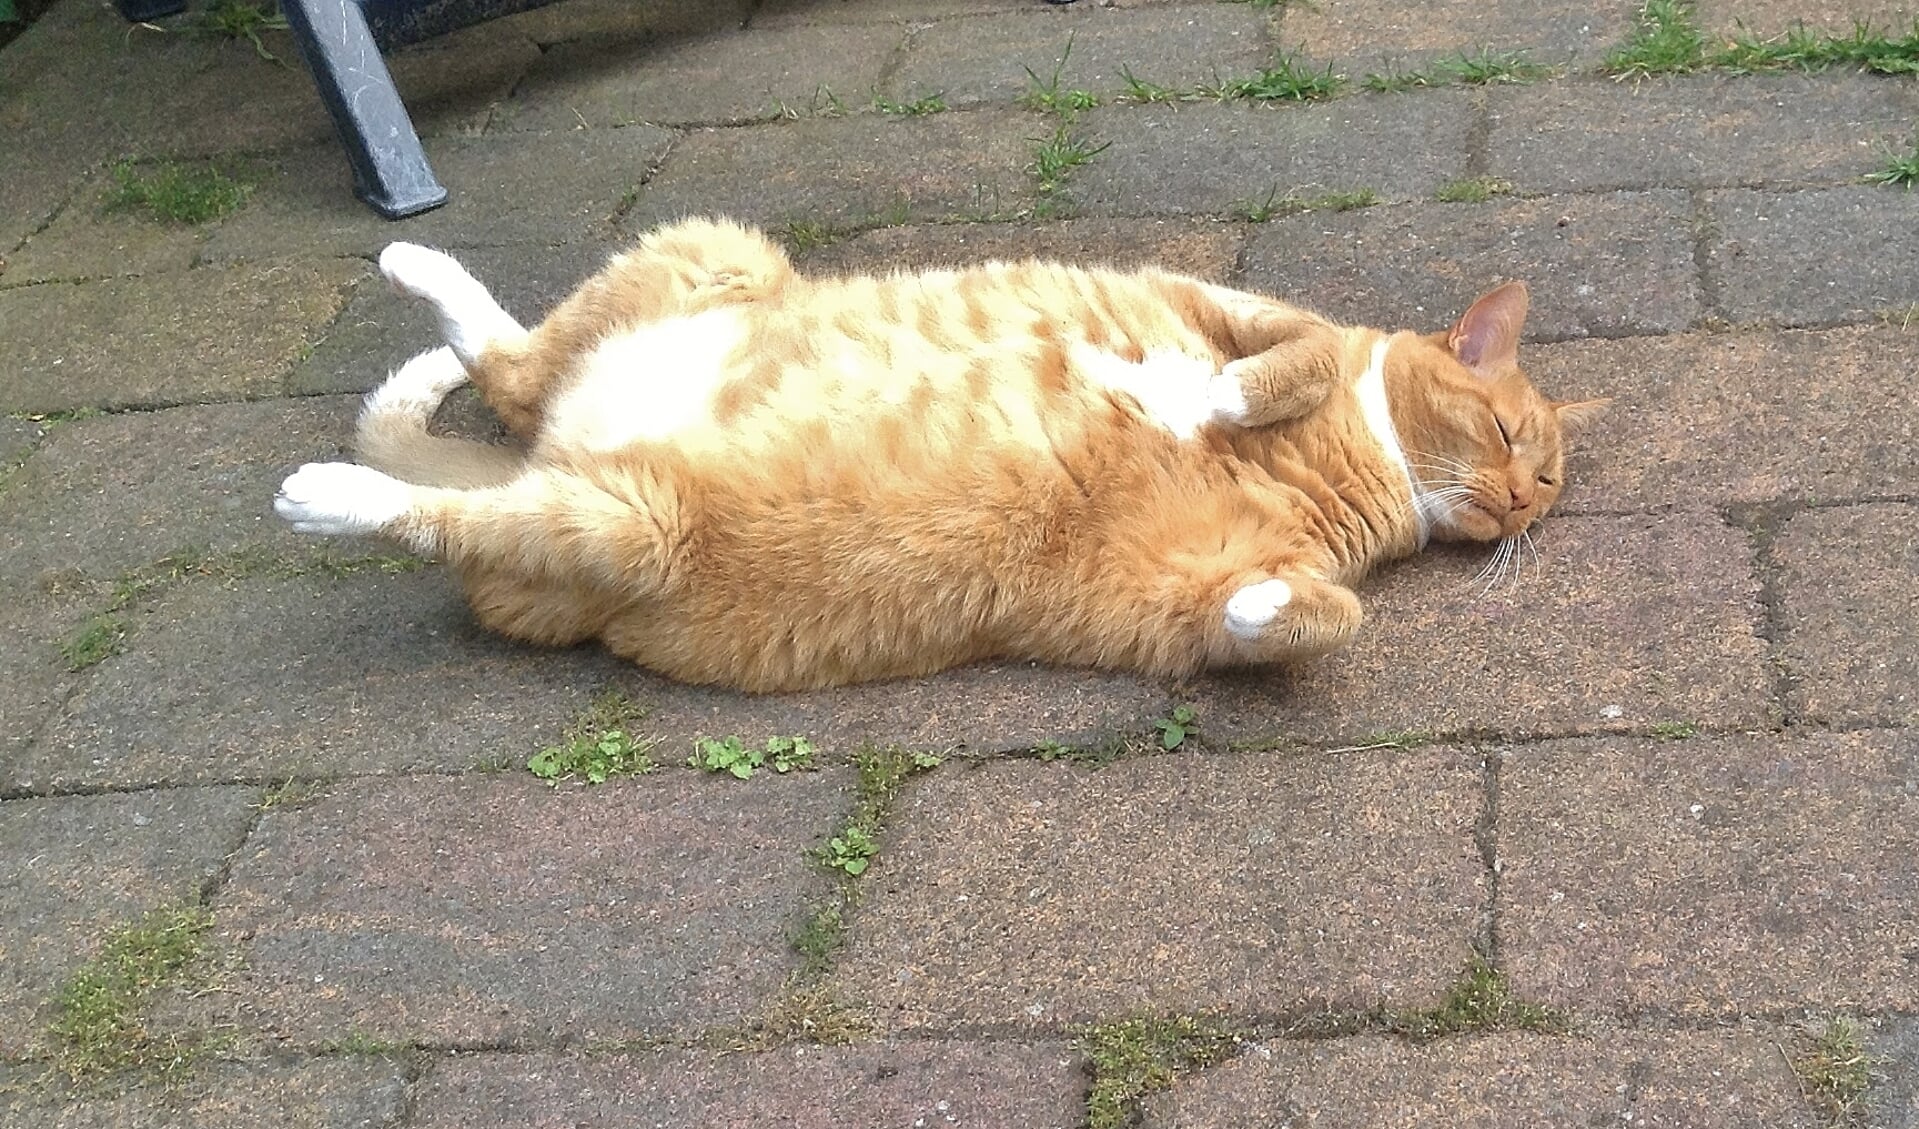 De kat van de heer Caminada uit Oegstgeest probeert wat hitte kwijt te raken in deze warme dagen.